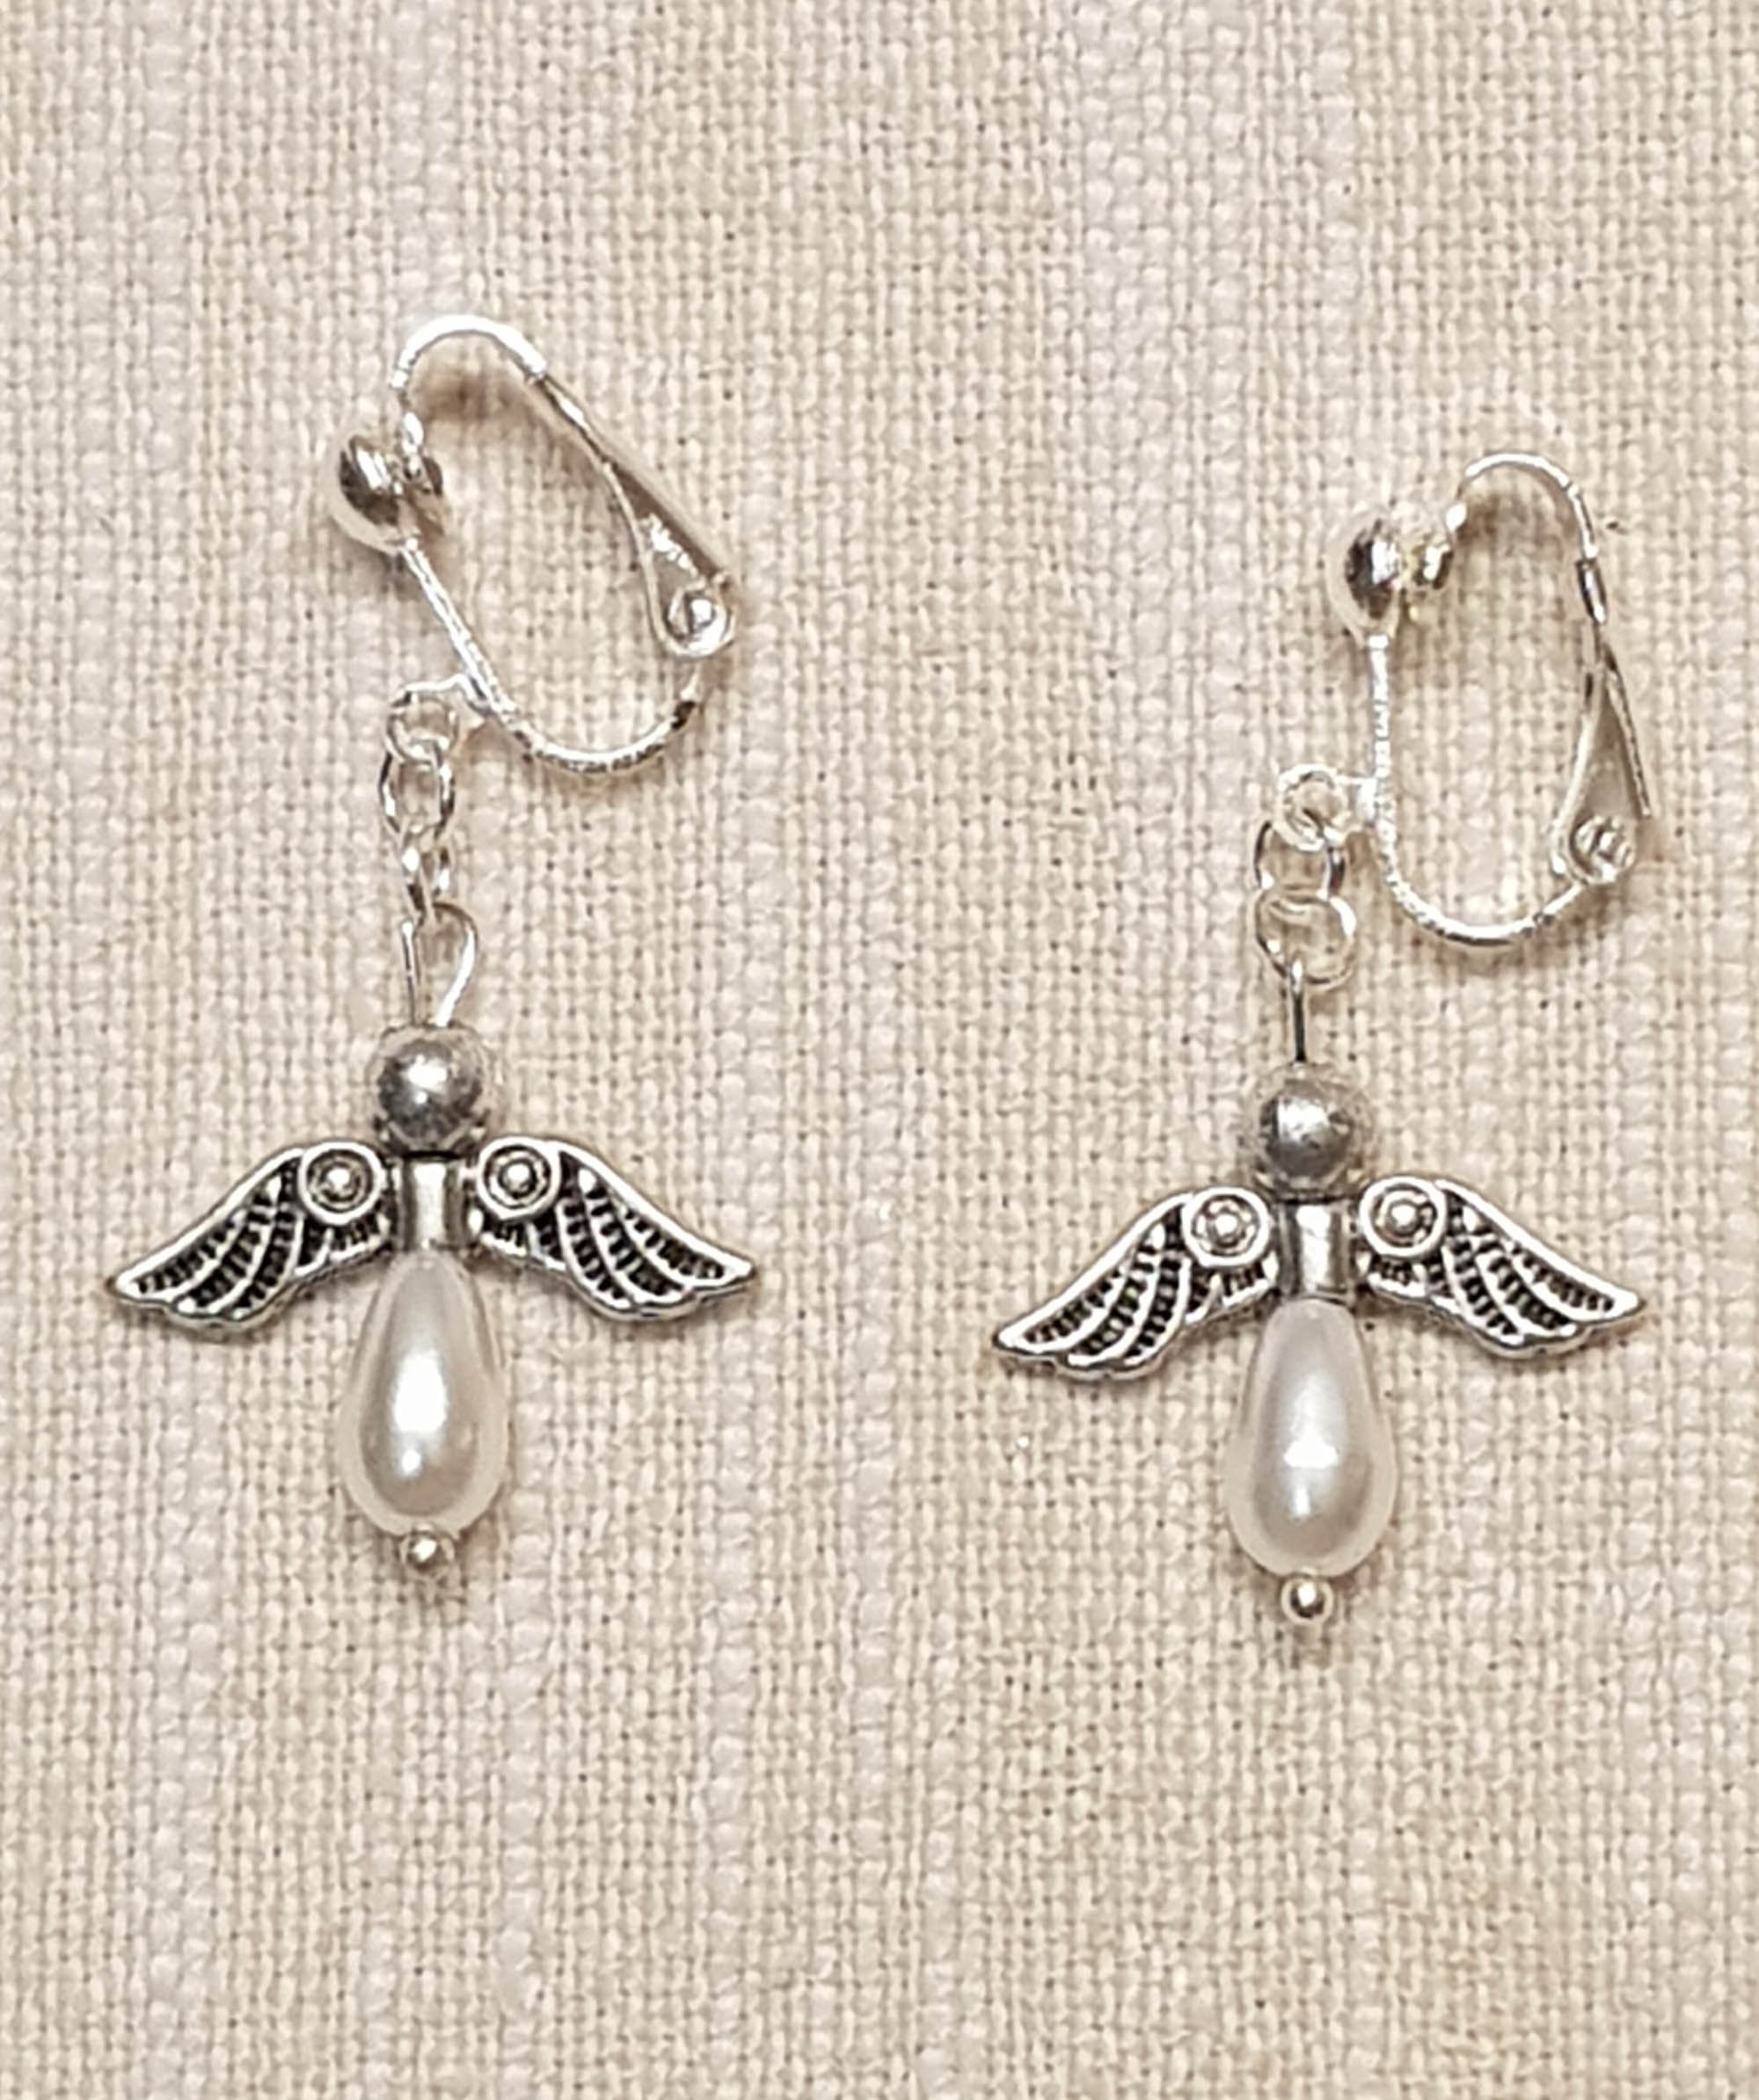 Ear clips Angel with pearls in black Earrings Angel elegant earrings with angel pendant black silver